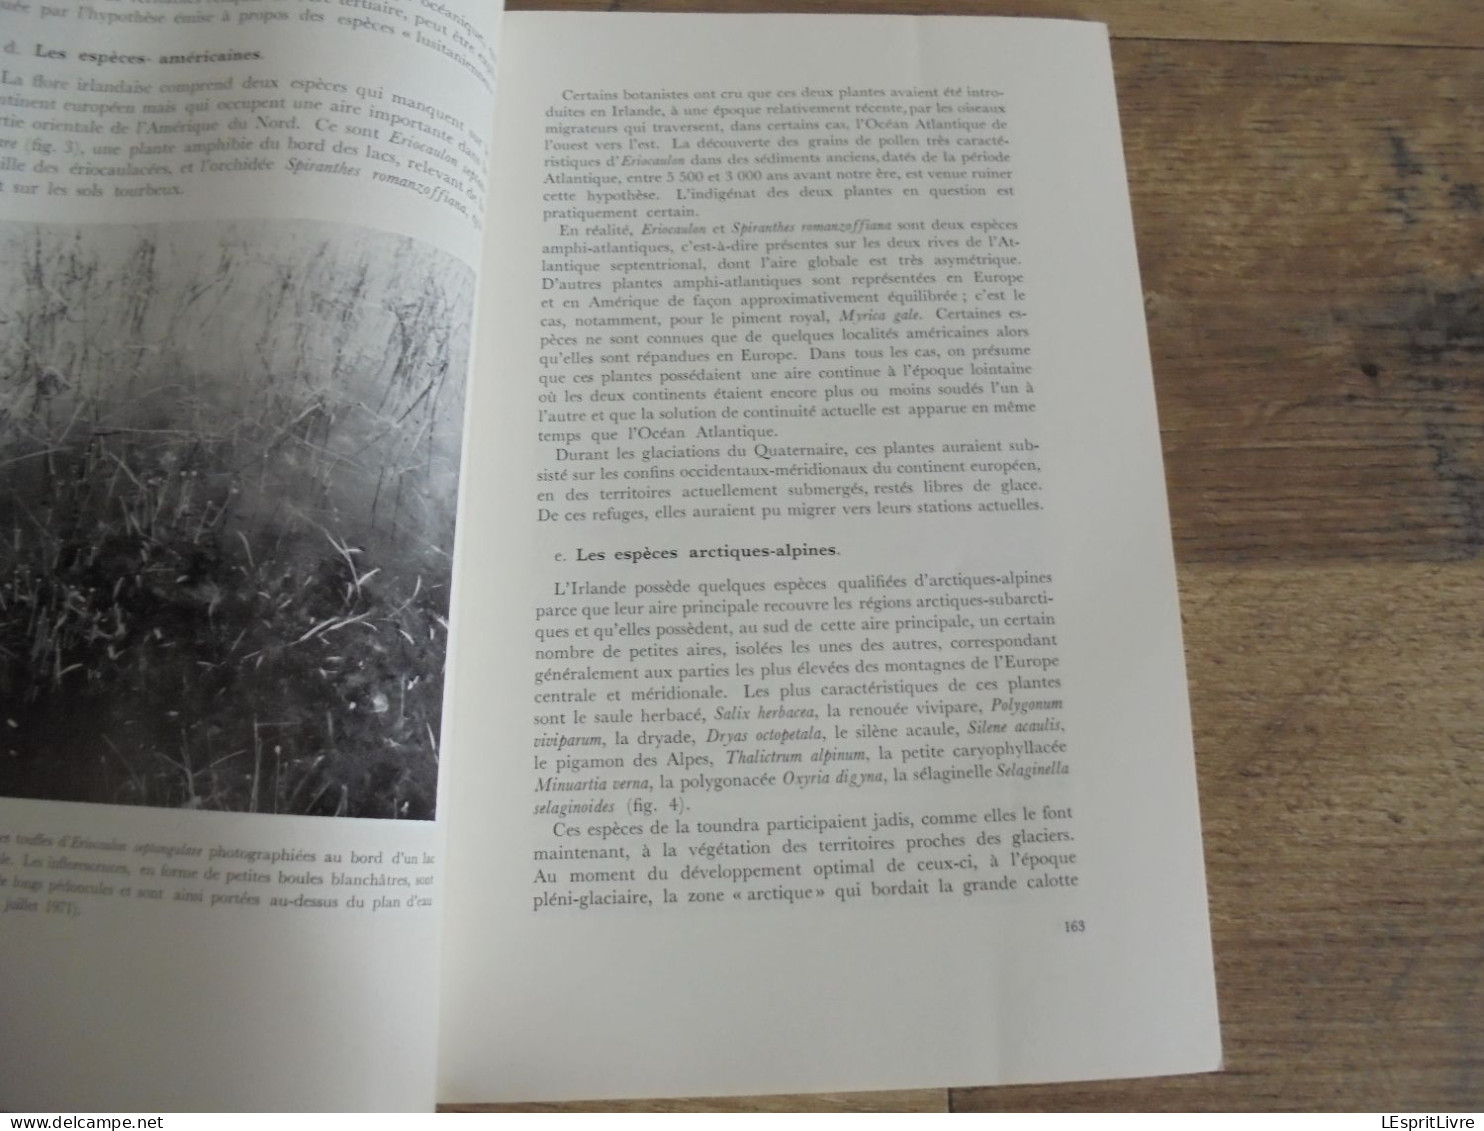 LES NATURALISTES BELGES N° 4 Année 1972 Régionalisme Irlande Tourbières Faune Oiseaux  Botanique Flore - Belgium